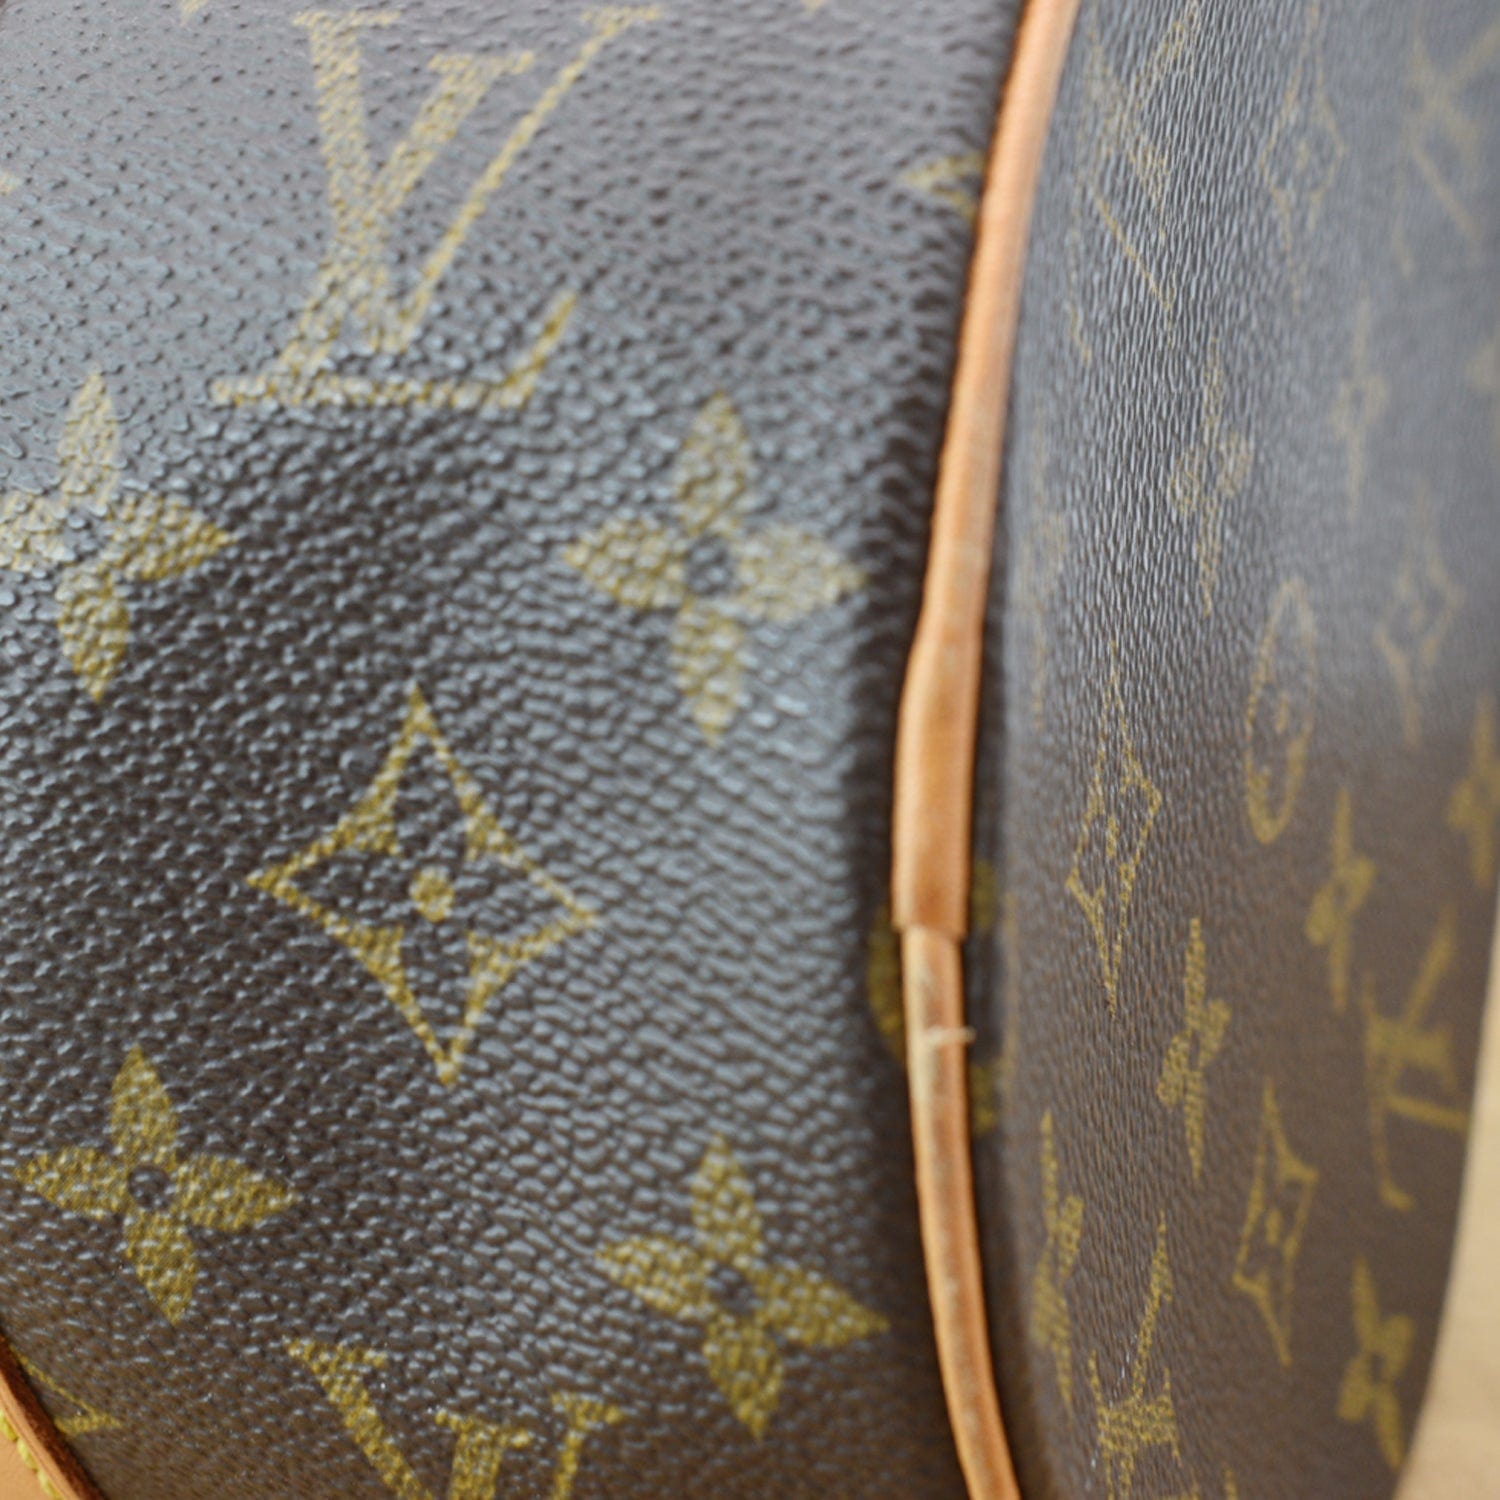 Louis Vuitton Papillon Handbag 280207